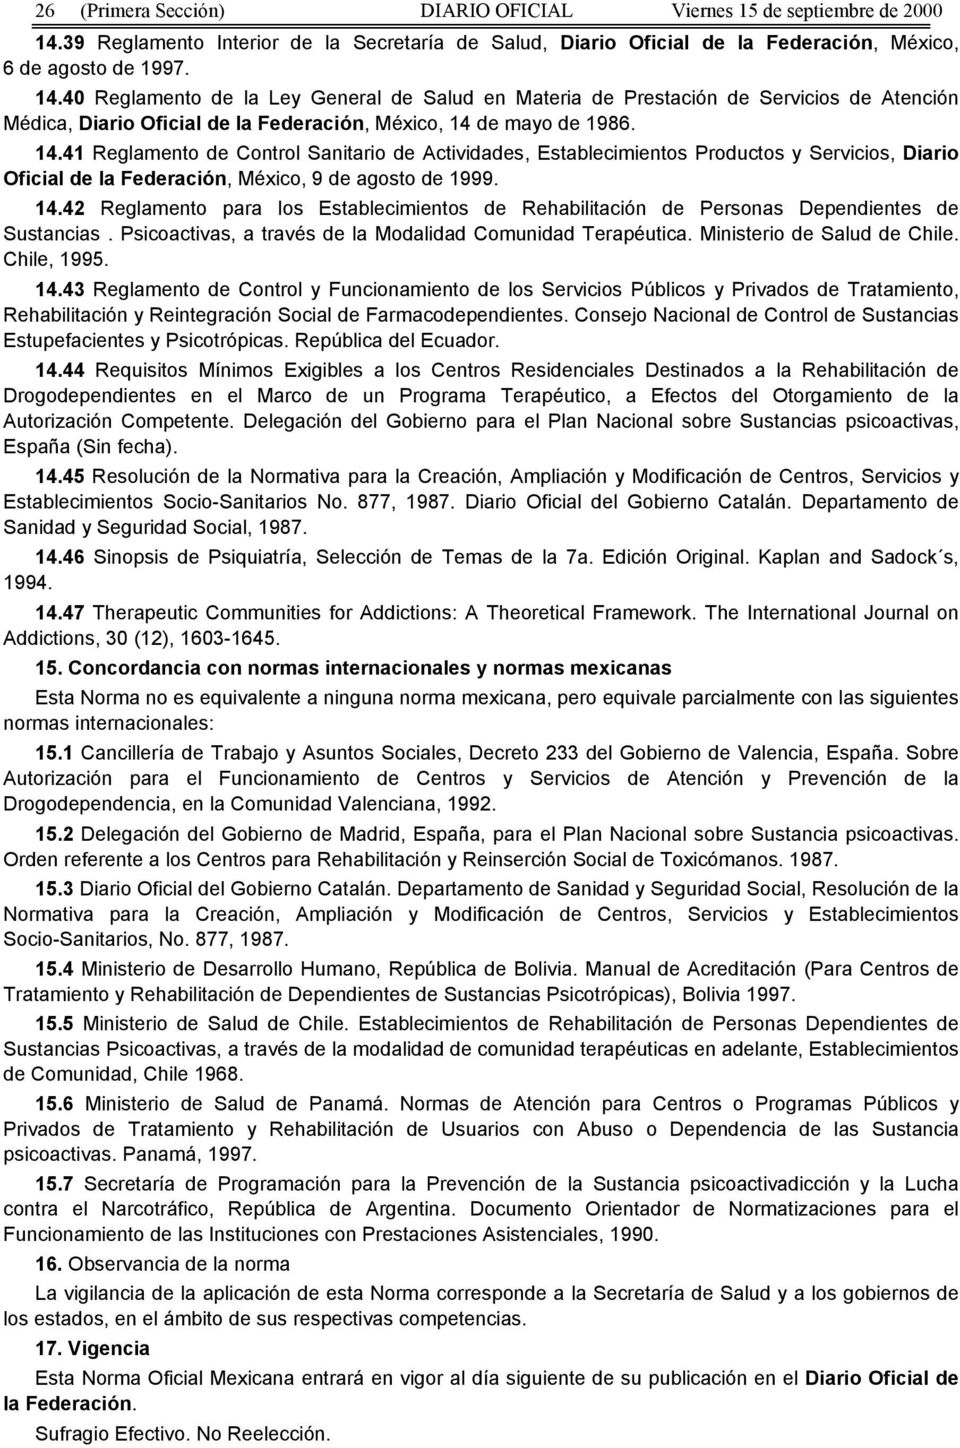 40 Reglamento de la Ley General de Salud en Materia de Prestación de Servicios de Atención Médica, Diario Oficial de la Federación, México, 14 